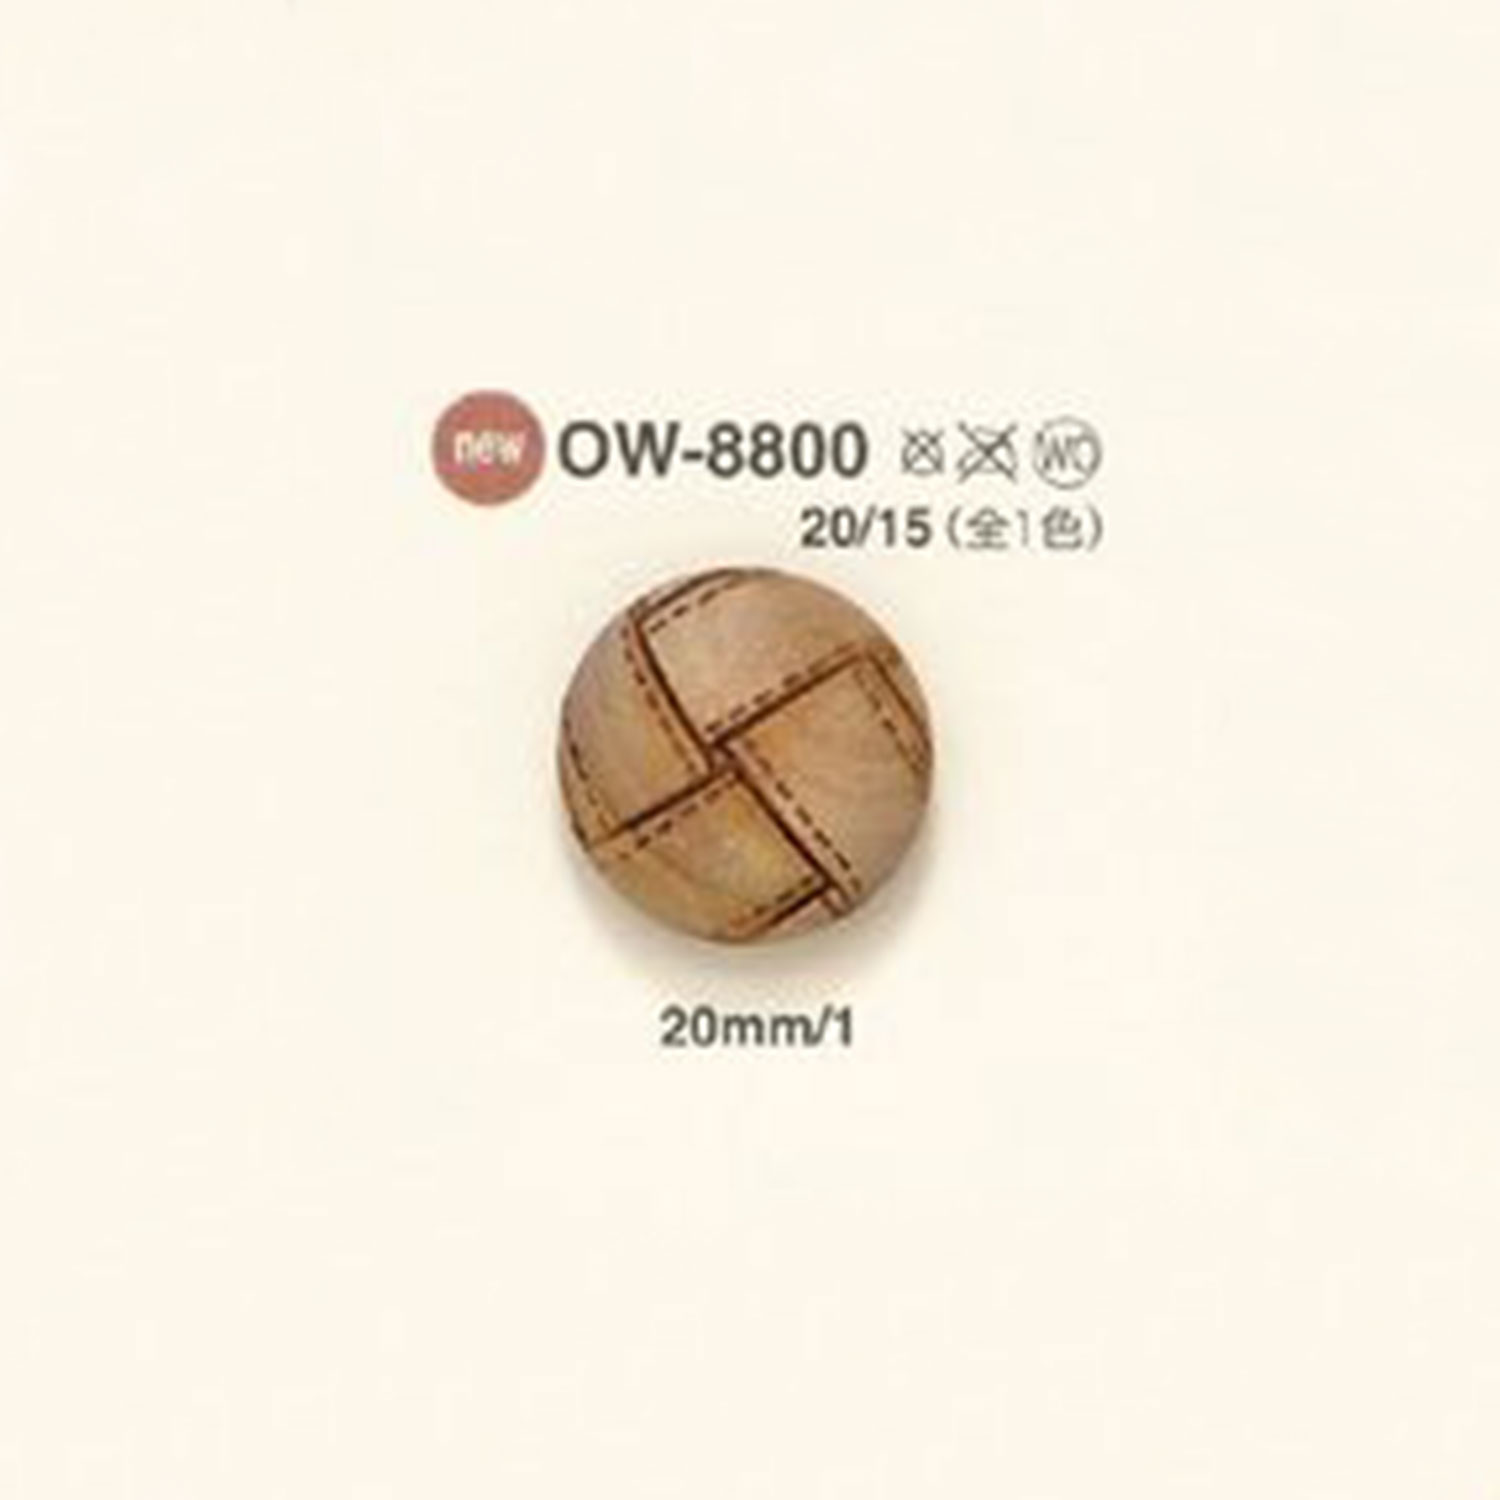 OW-8800 Wood Button IRIS